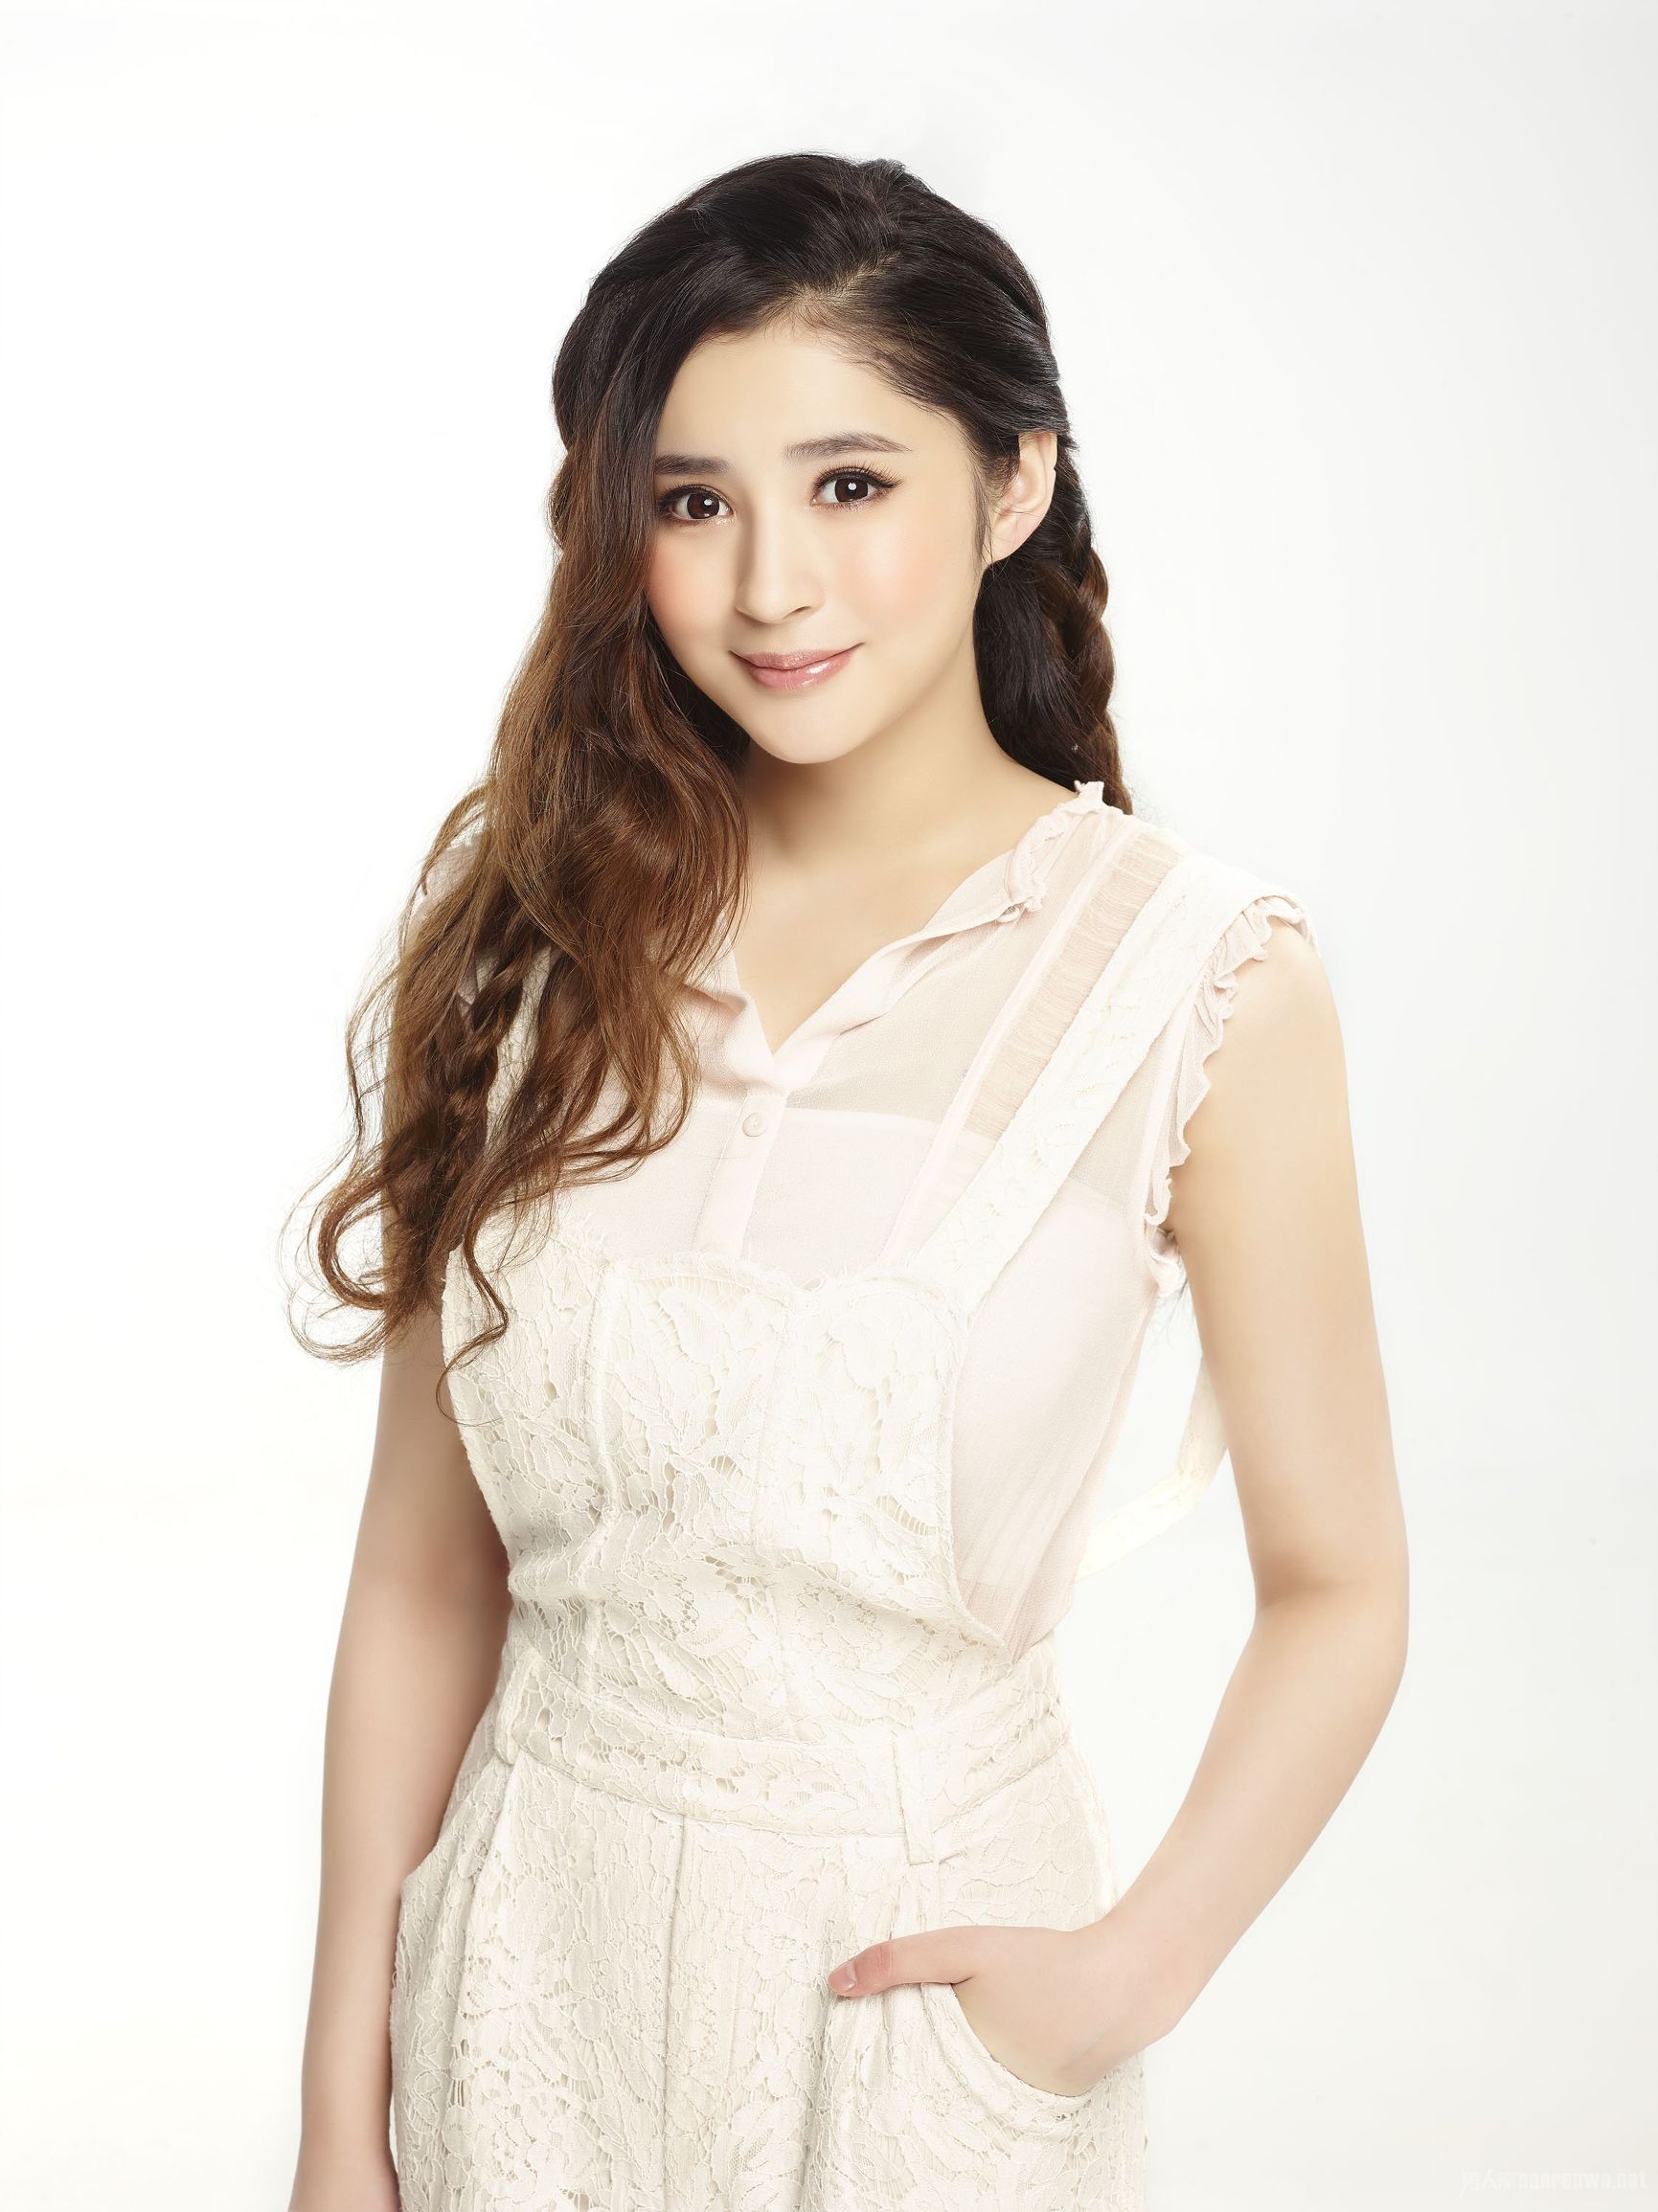 李心艾，1990年出生于陕西西安，中国内地女演员，歌手，曾在周杰伦歌舞电影《天台爱情》中担任女主角